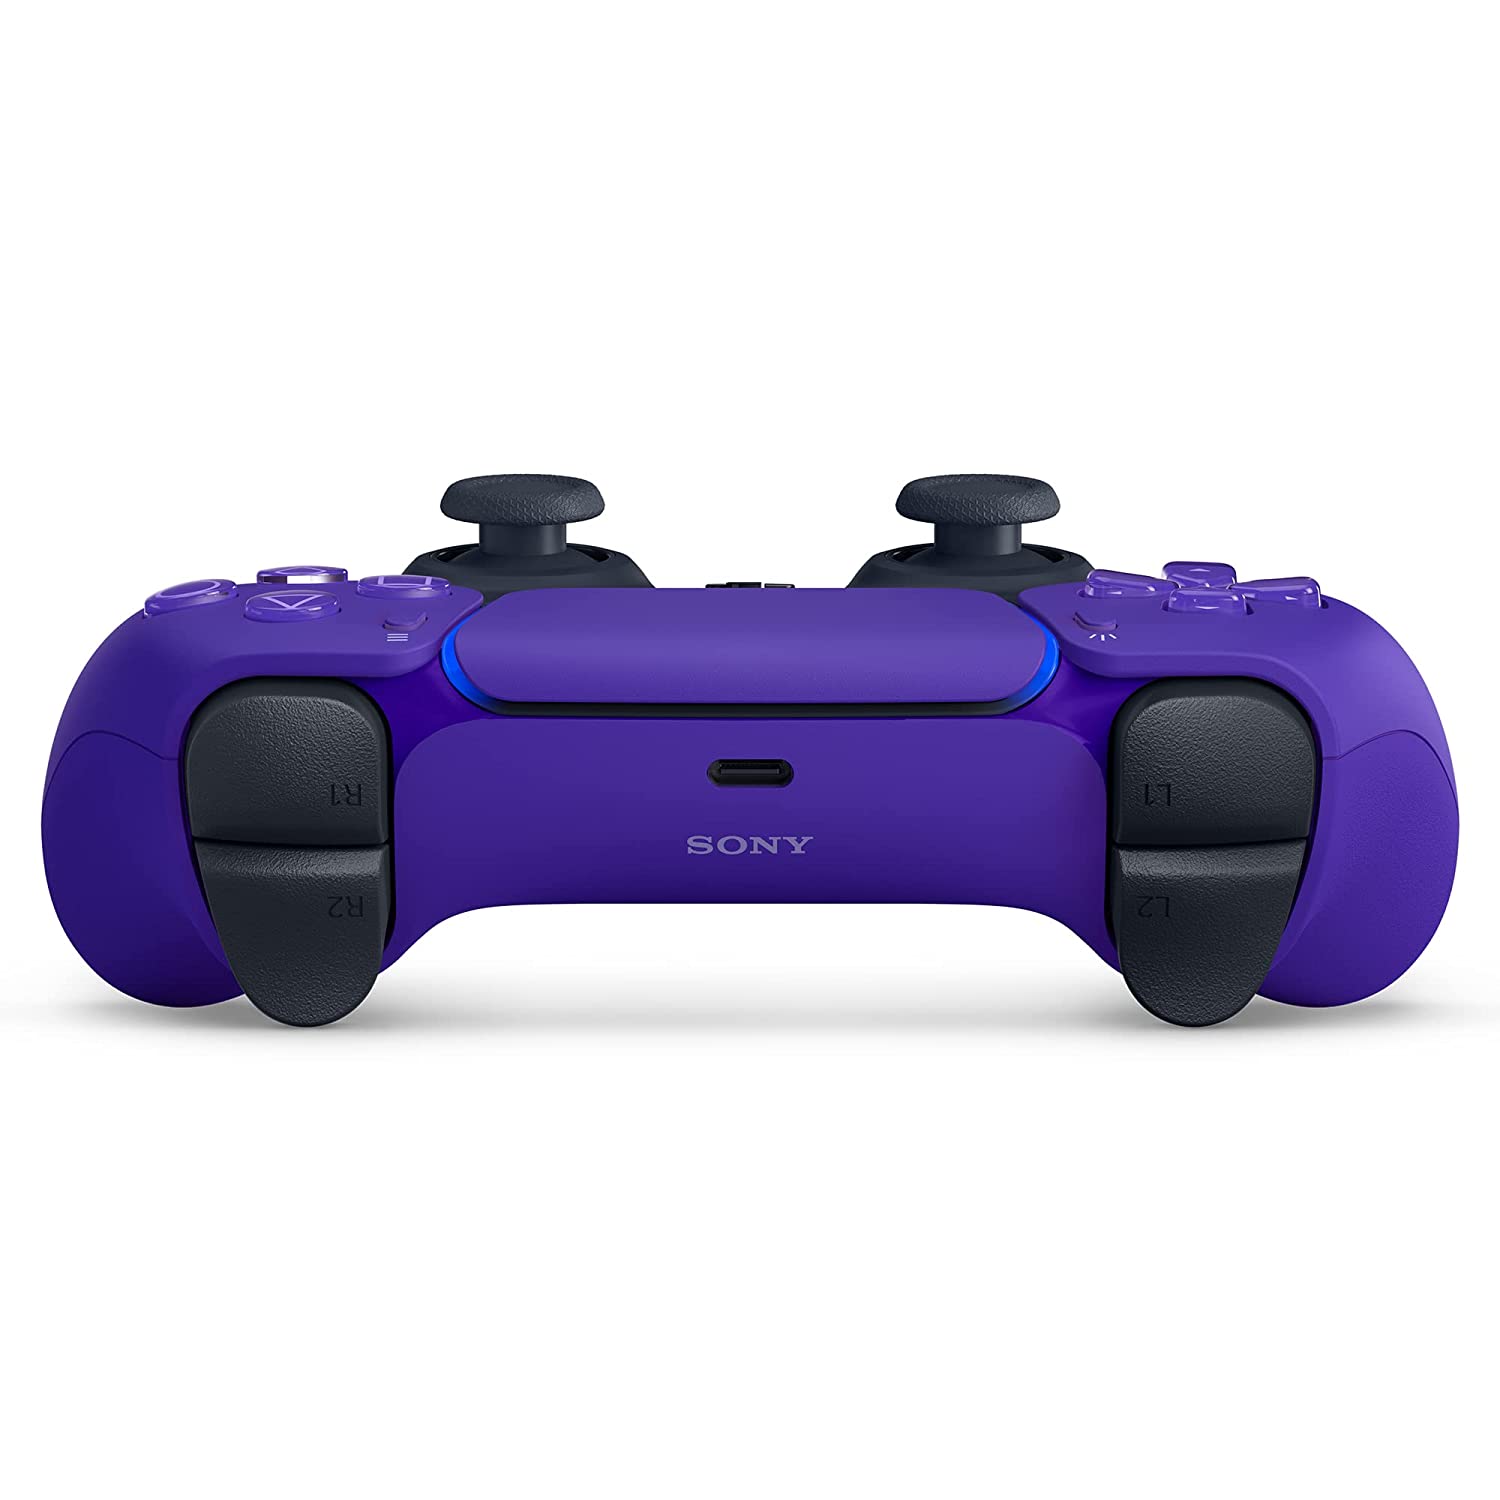 Скриншоты Беспроводной геймпад DualSense для PS5 Galactic Purple (Галактический пурпурный) интернет-магазин Омегагейм